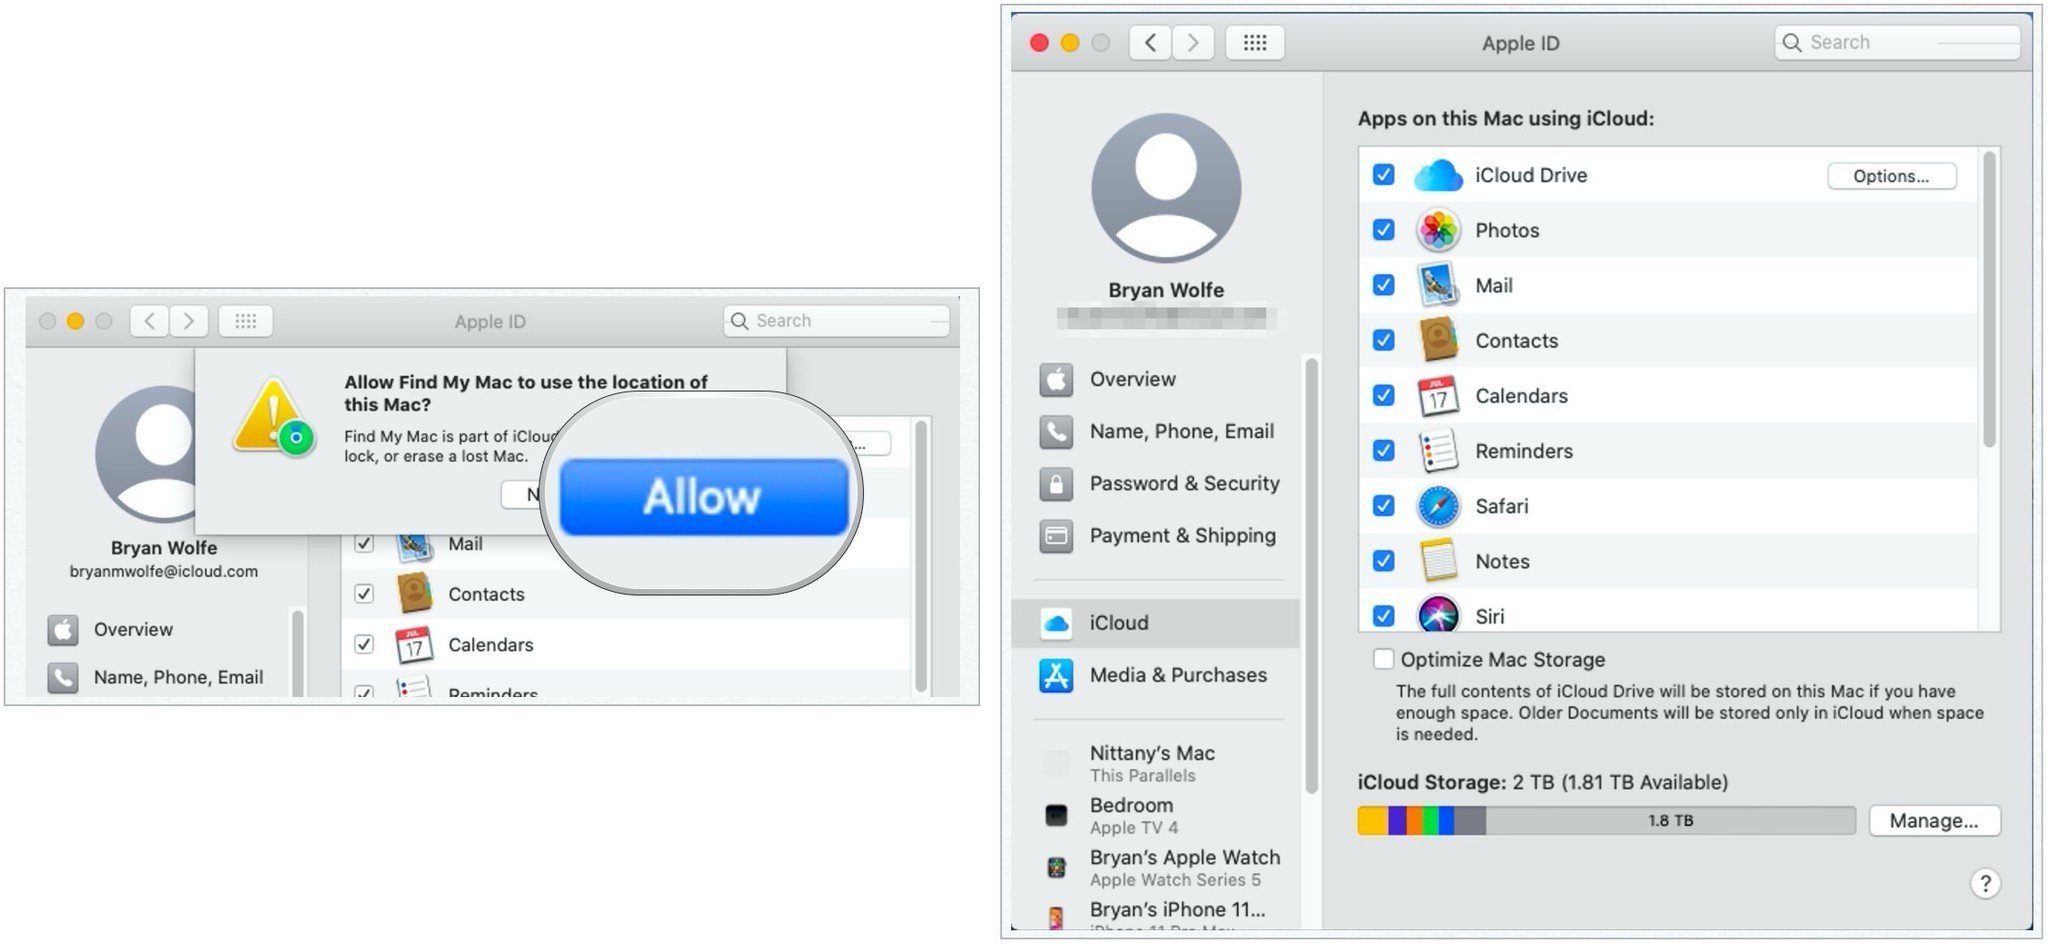 Pour configurer iCloud sur Mac, choisissez Autoriser, puis cochez les cases à côté de toutes les applications qui utilisent iCloud.